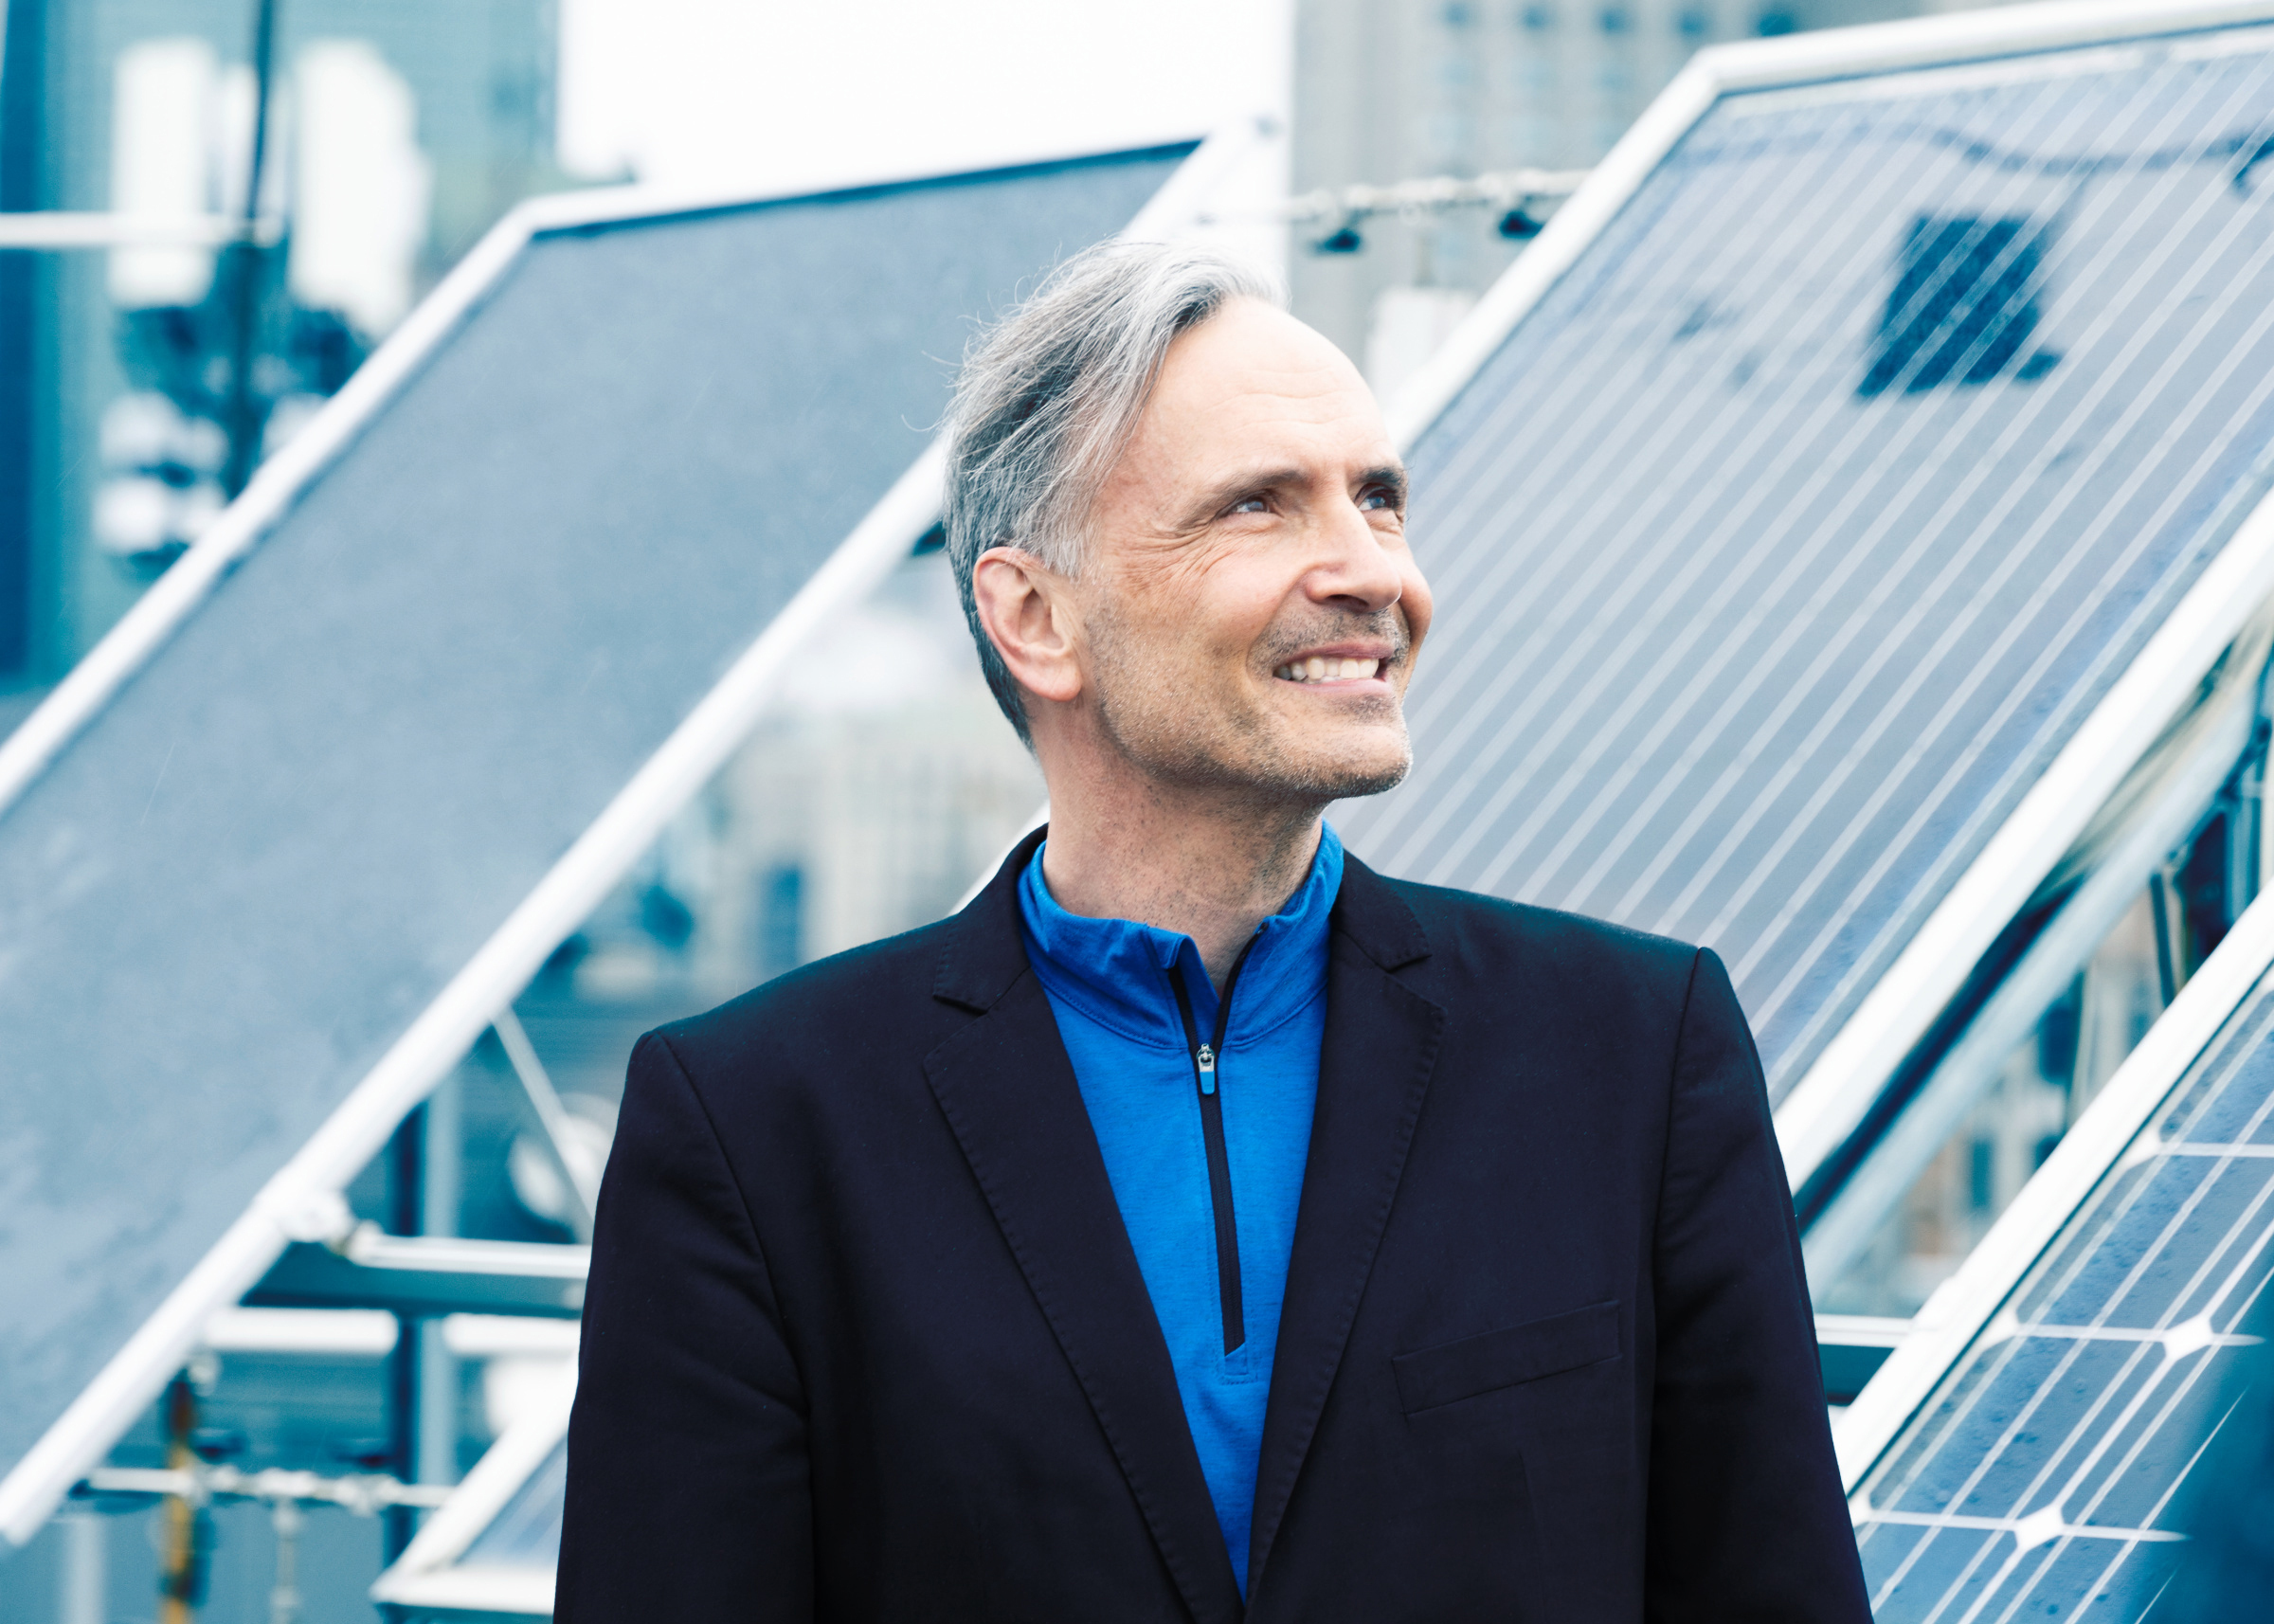 Professeur souriant devant des panneaux solaires, symbolisant l'innovation en énergie verte.